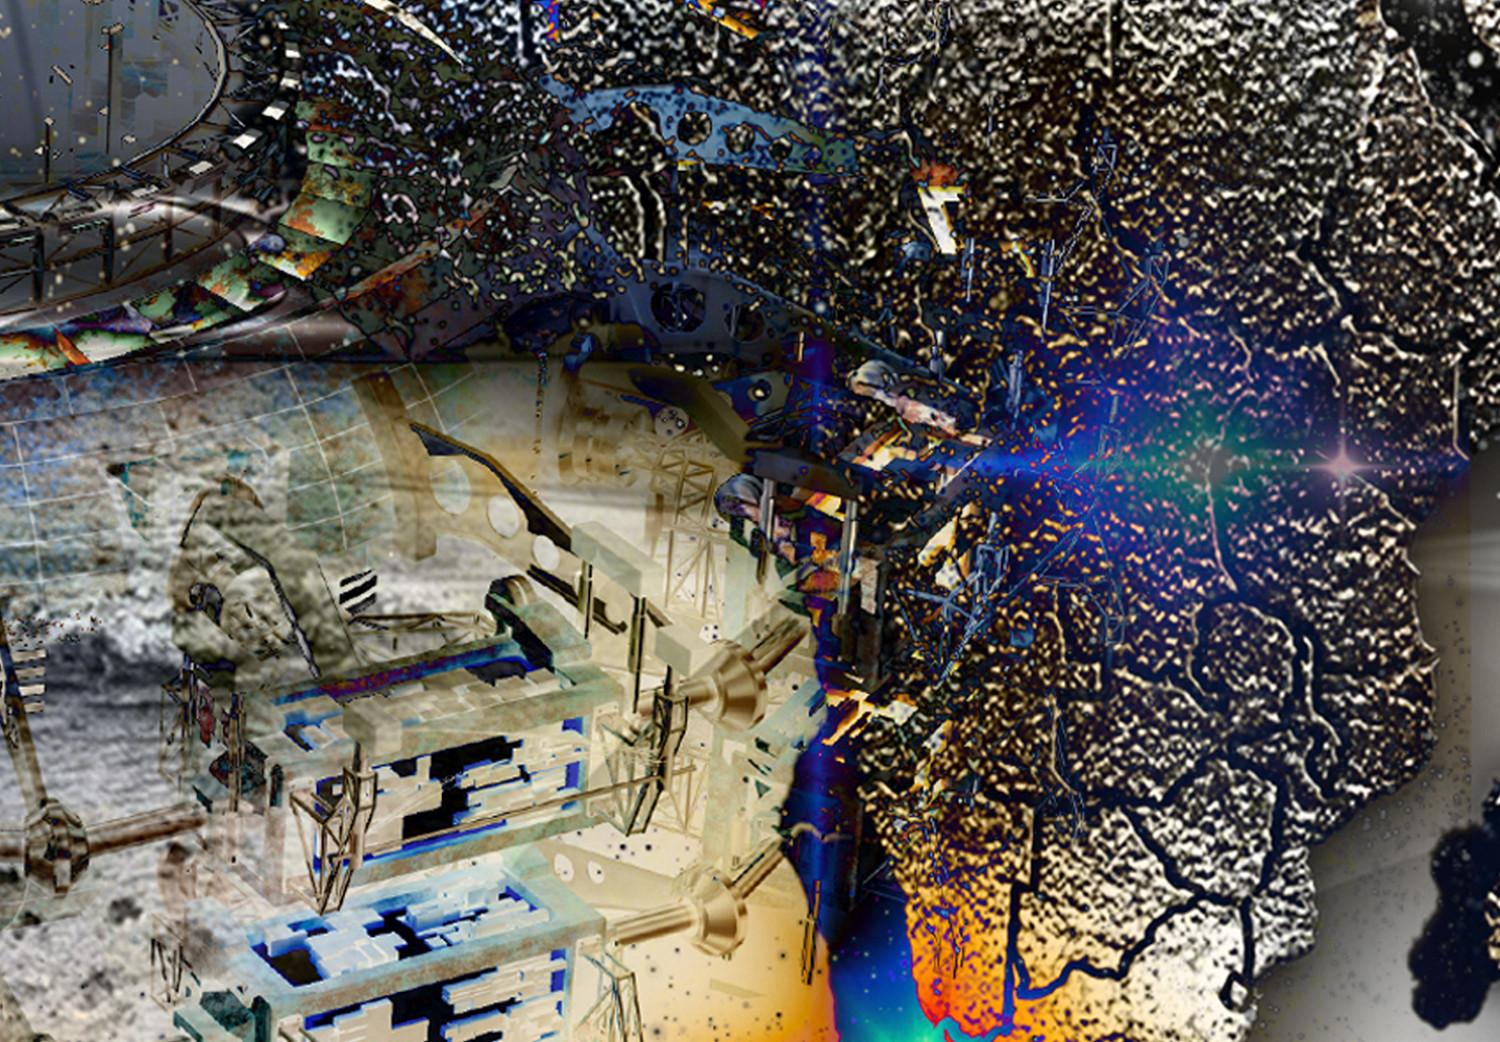 Cuadro decorativo Mapa del mundo futurista - abstracto con destellos azules